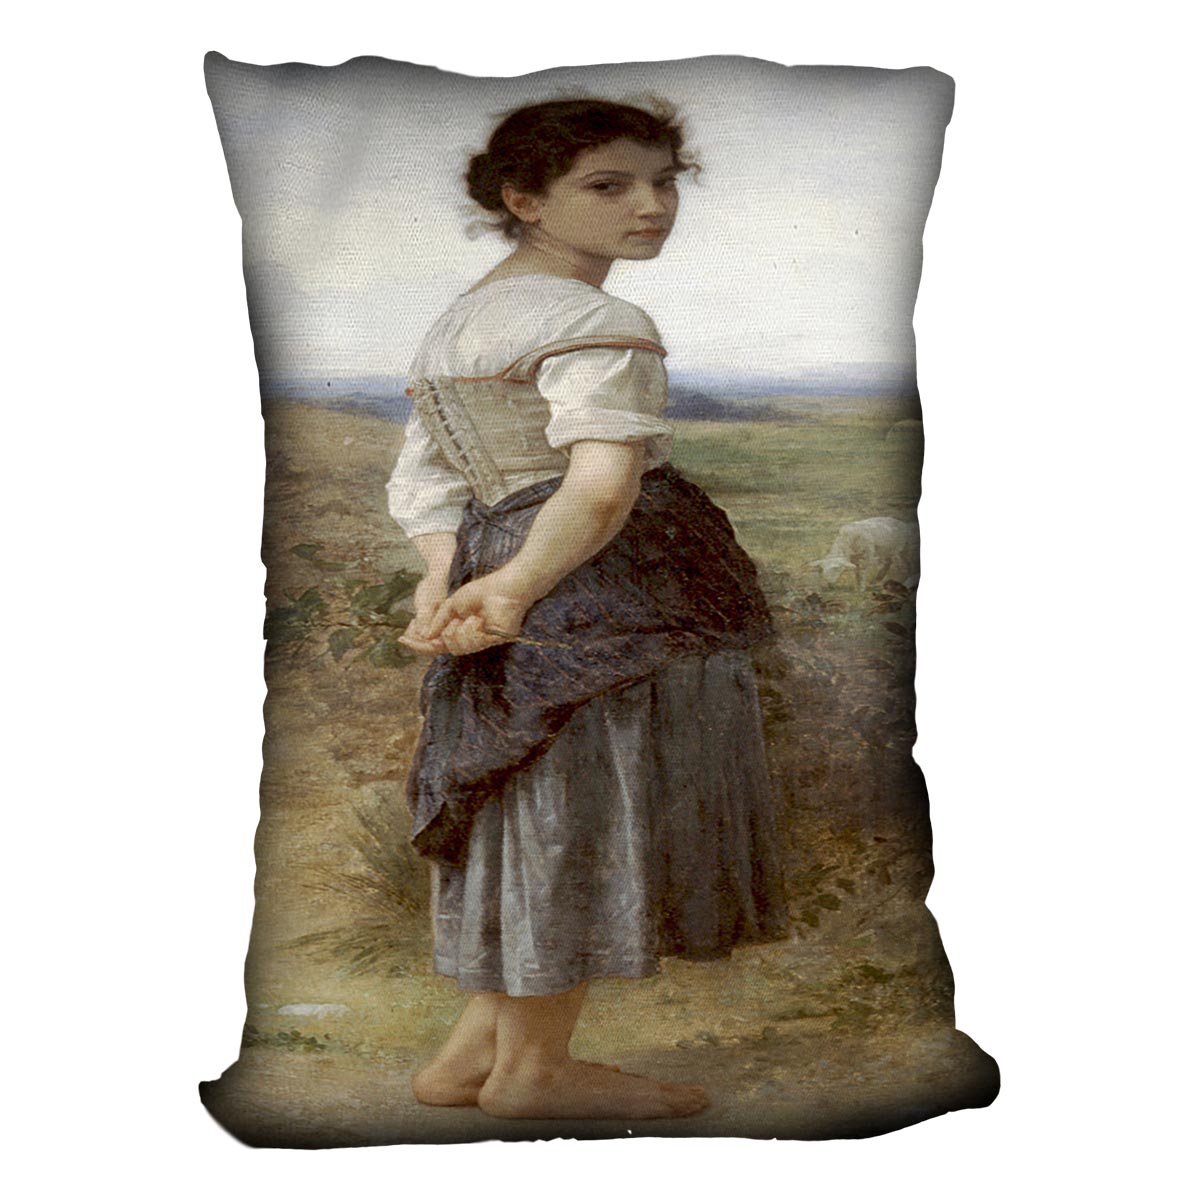 The Young Shepherdess By Bouguereau Cushion